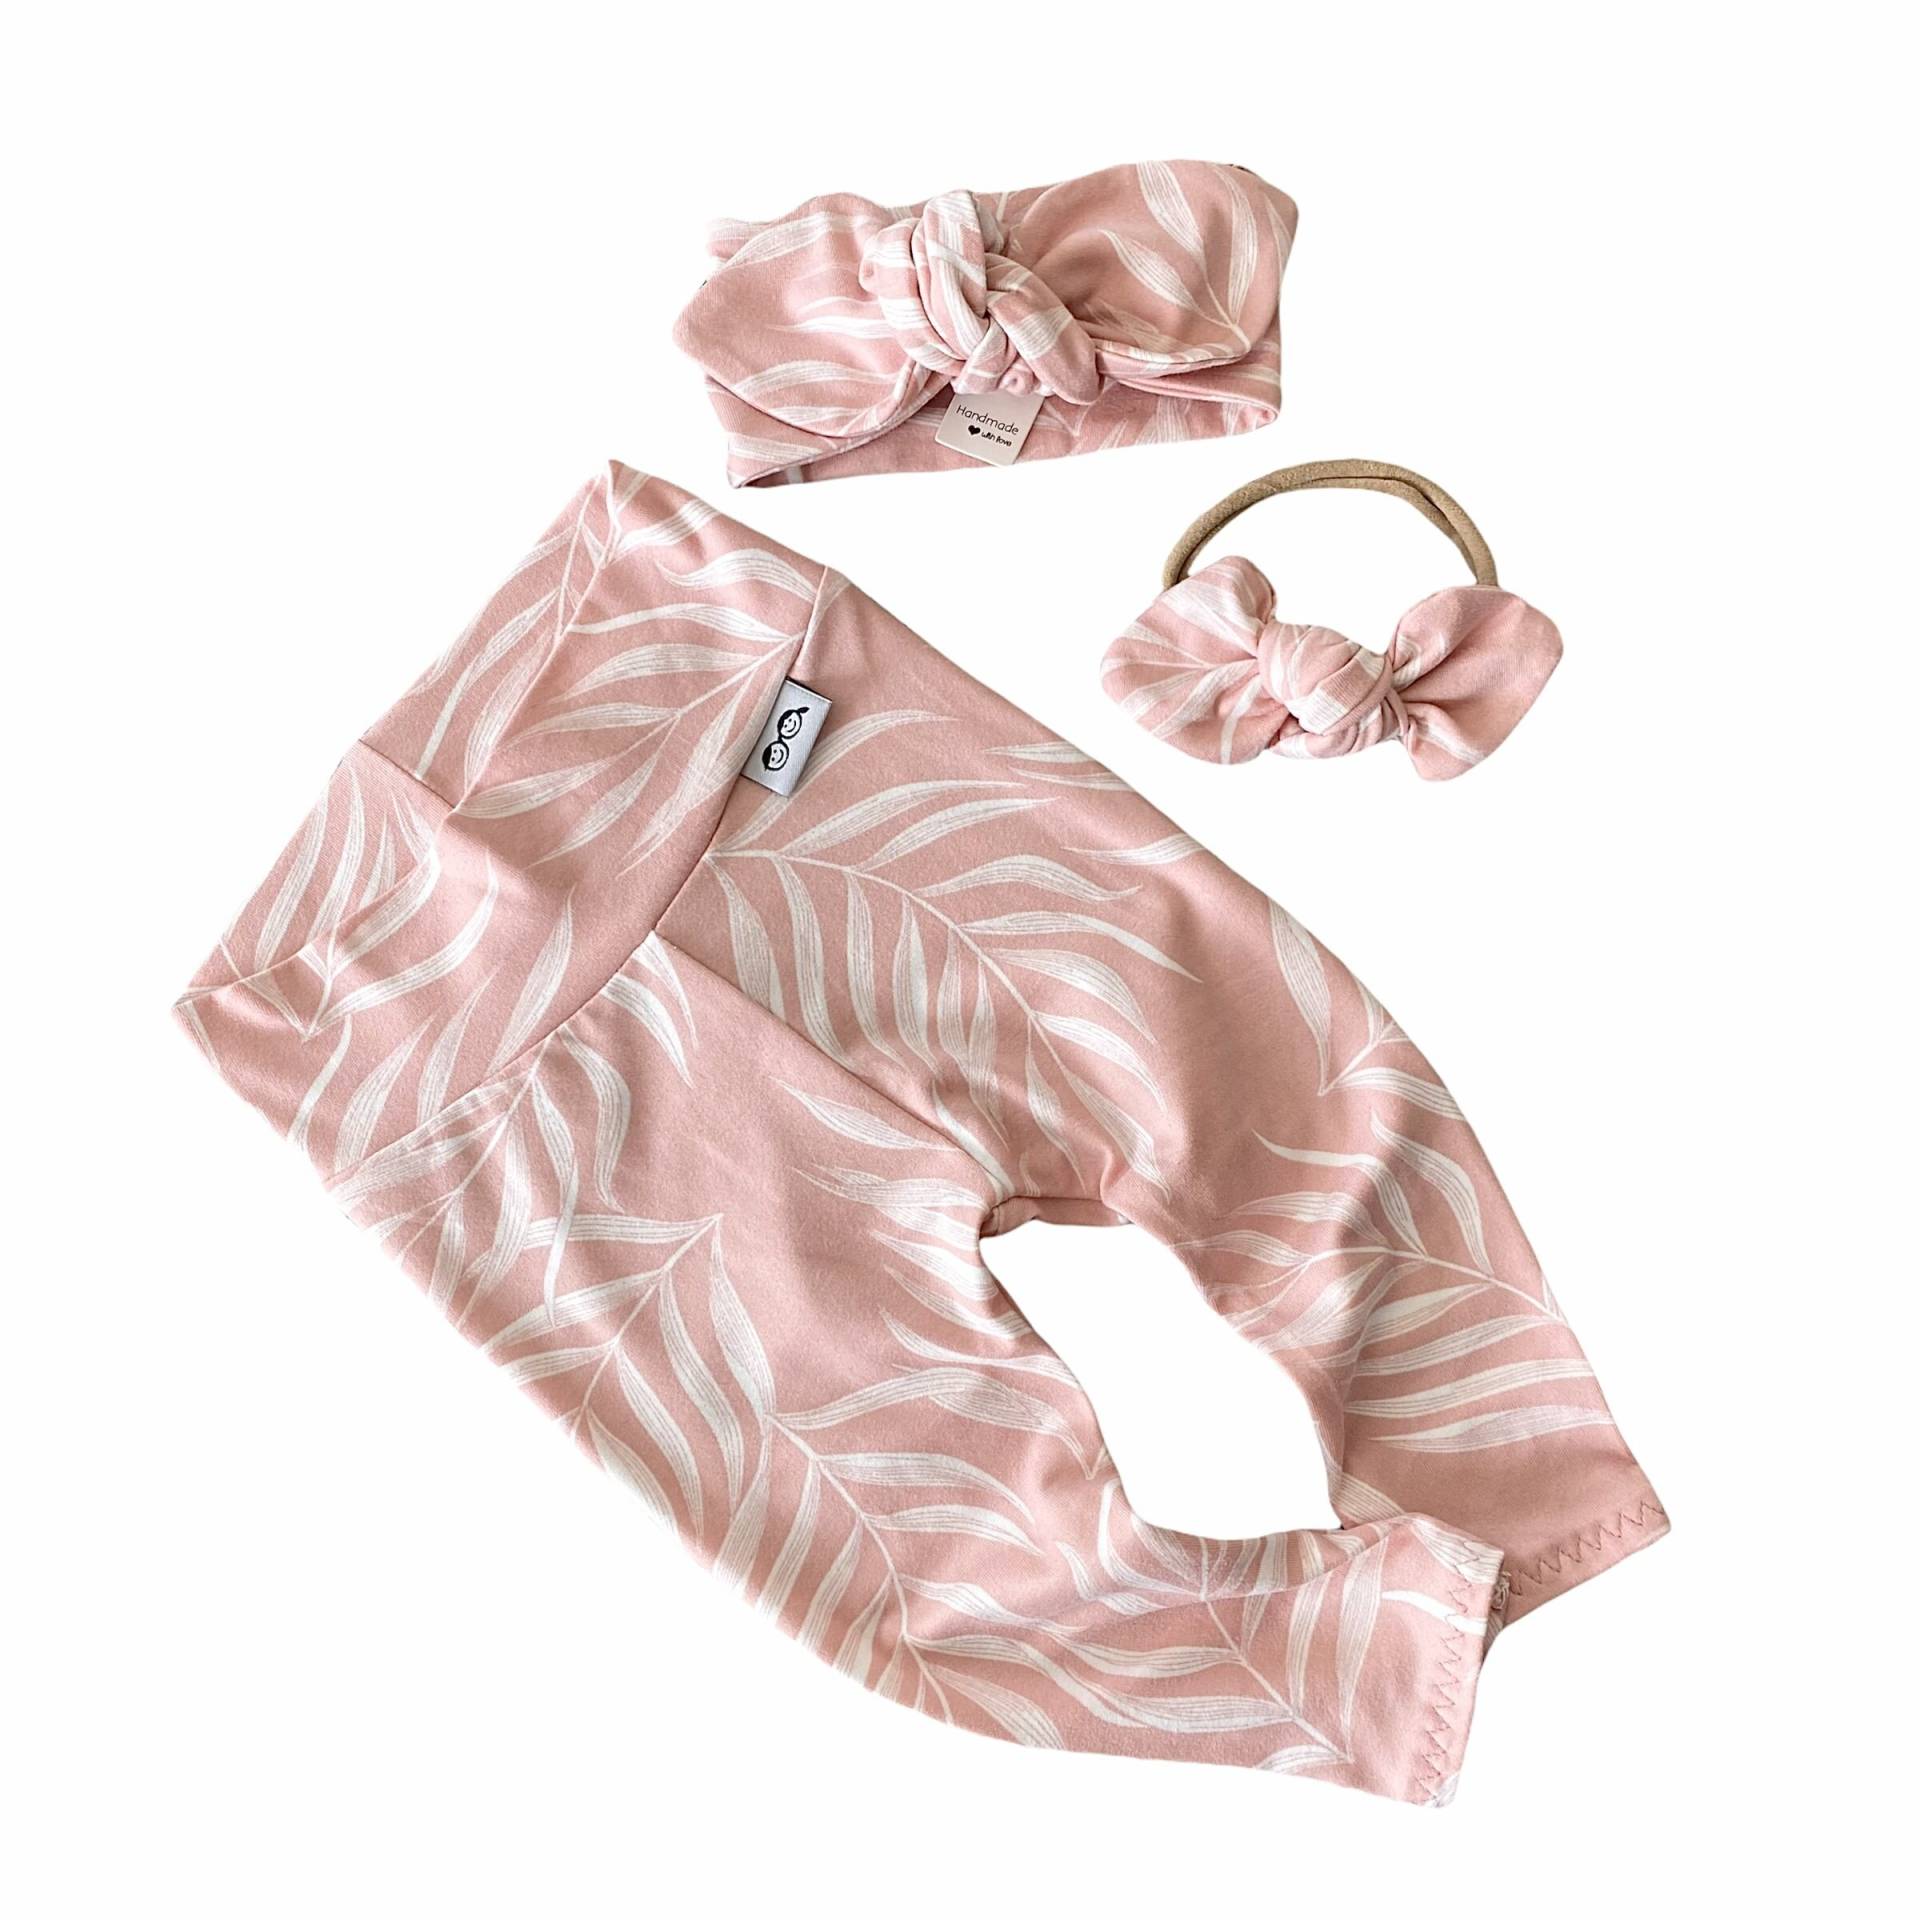 Rosa Pampas Blätter Leggings Und/Oder Top Knot Stirnband Set, Frühchen Mädchen Kleidung, Neugeborene Coming Home Outfit, Süße Kleinkind Hose von DudisDesign